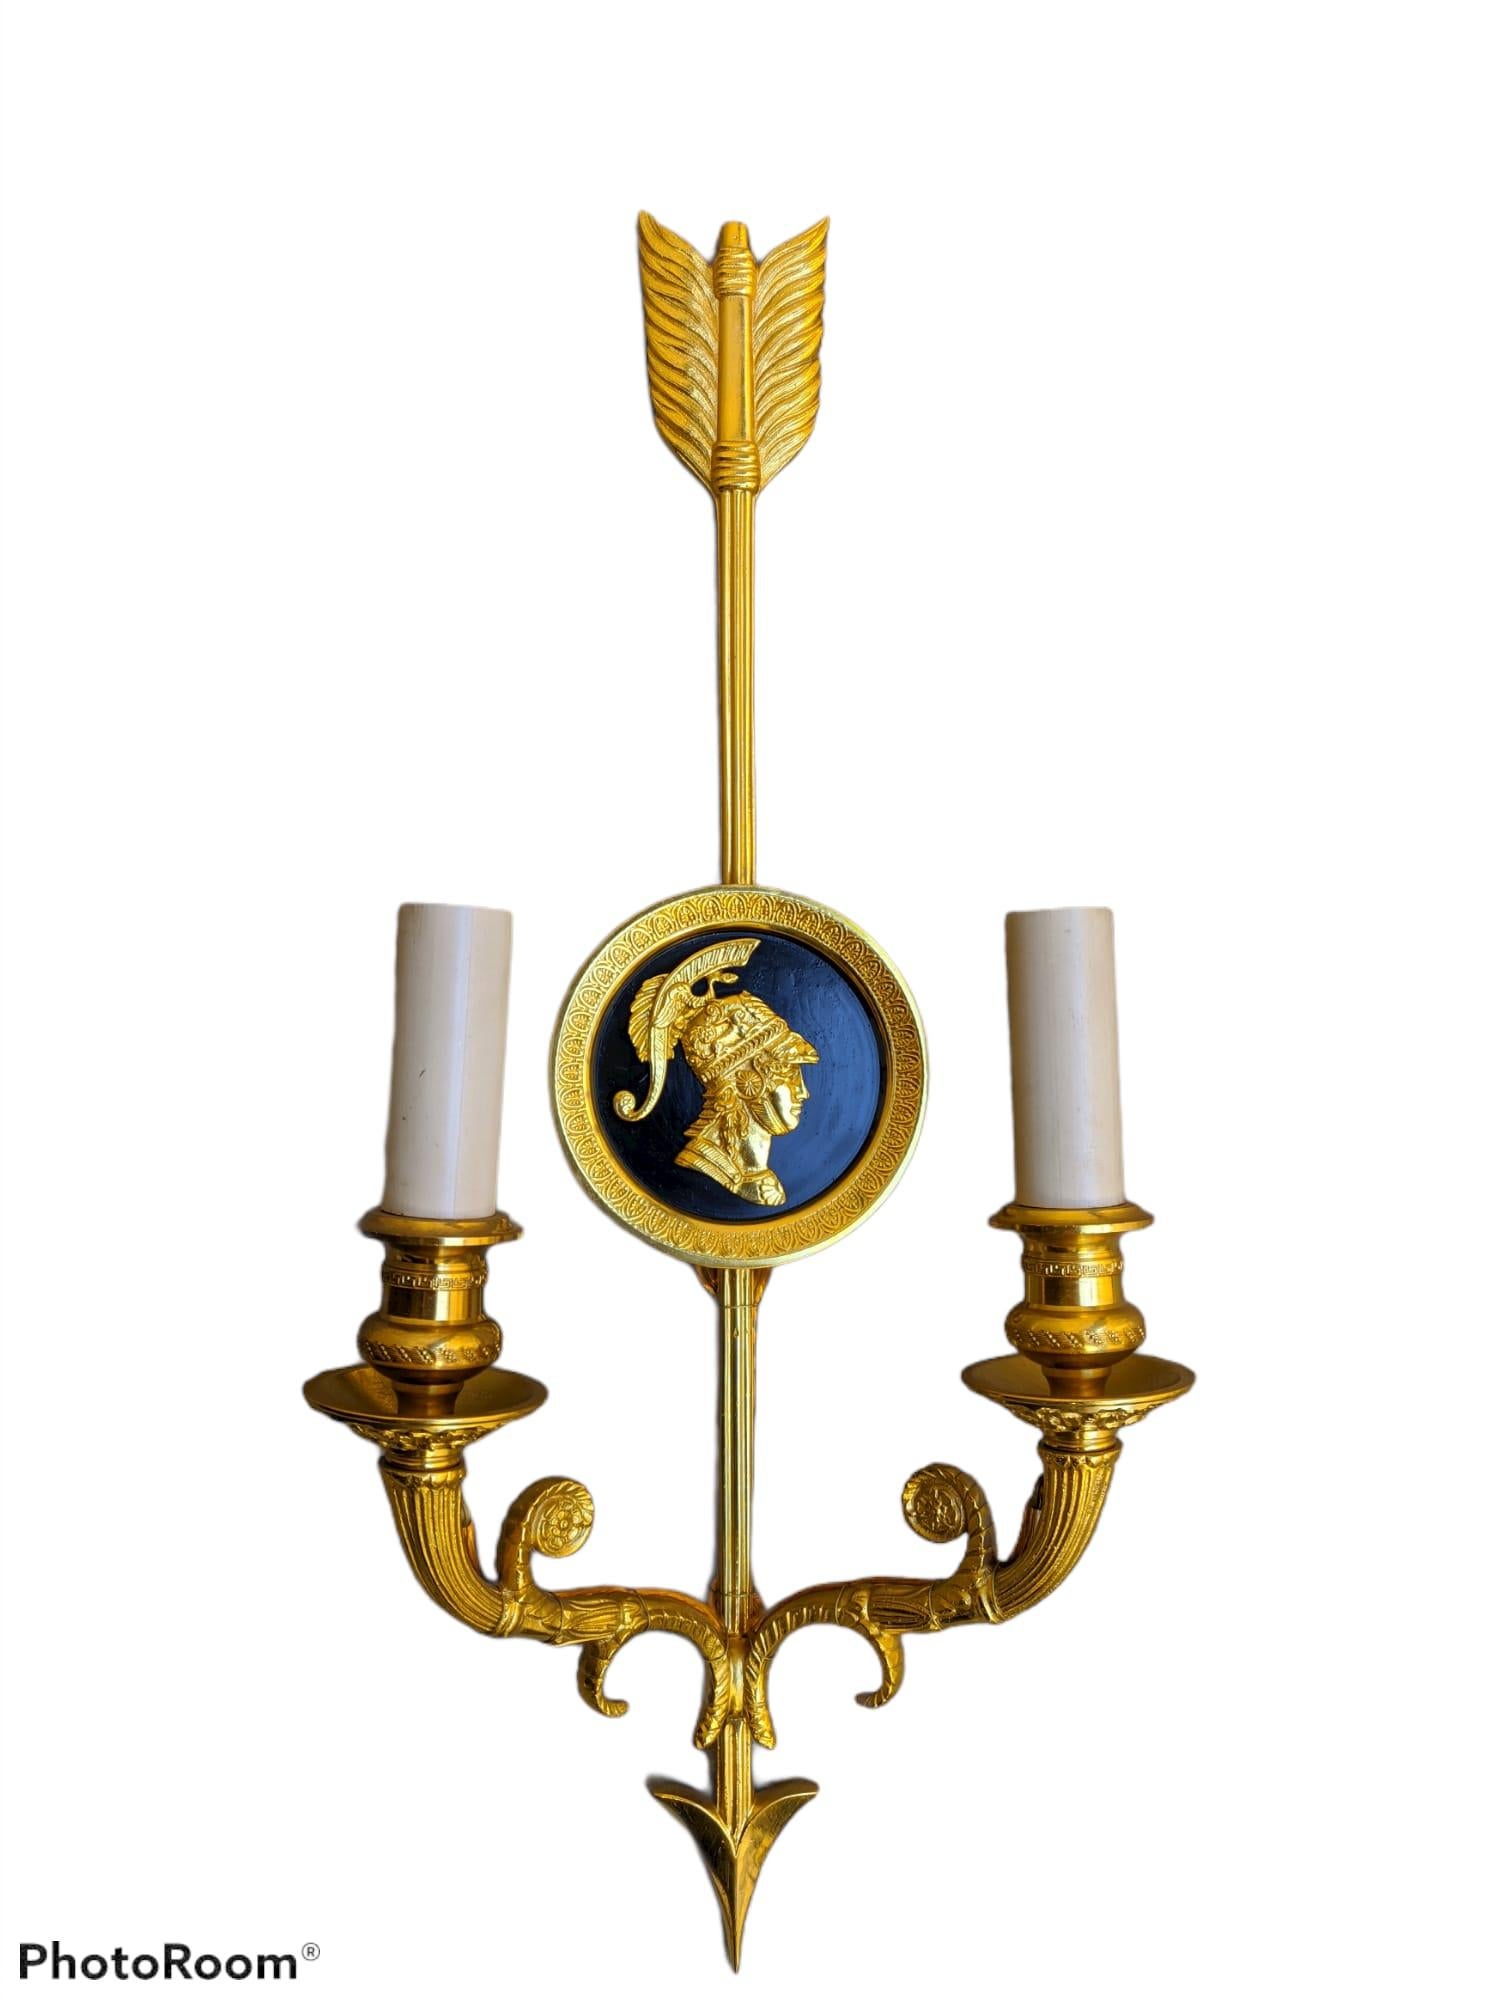 Dieser Wandleuchter aus vergoldeter Bronze im französischen Empire-Stil von Gherardo Degli Albizzi zeichnet sich durch hochwertige, handziselierte Details aus.
Die Rückwand dieser Leuchte besteht aus einer runden, lackierten Platte und einem Pfeil,